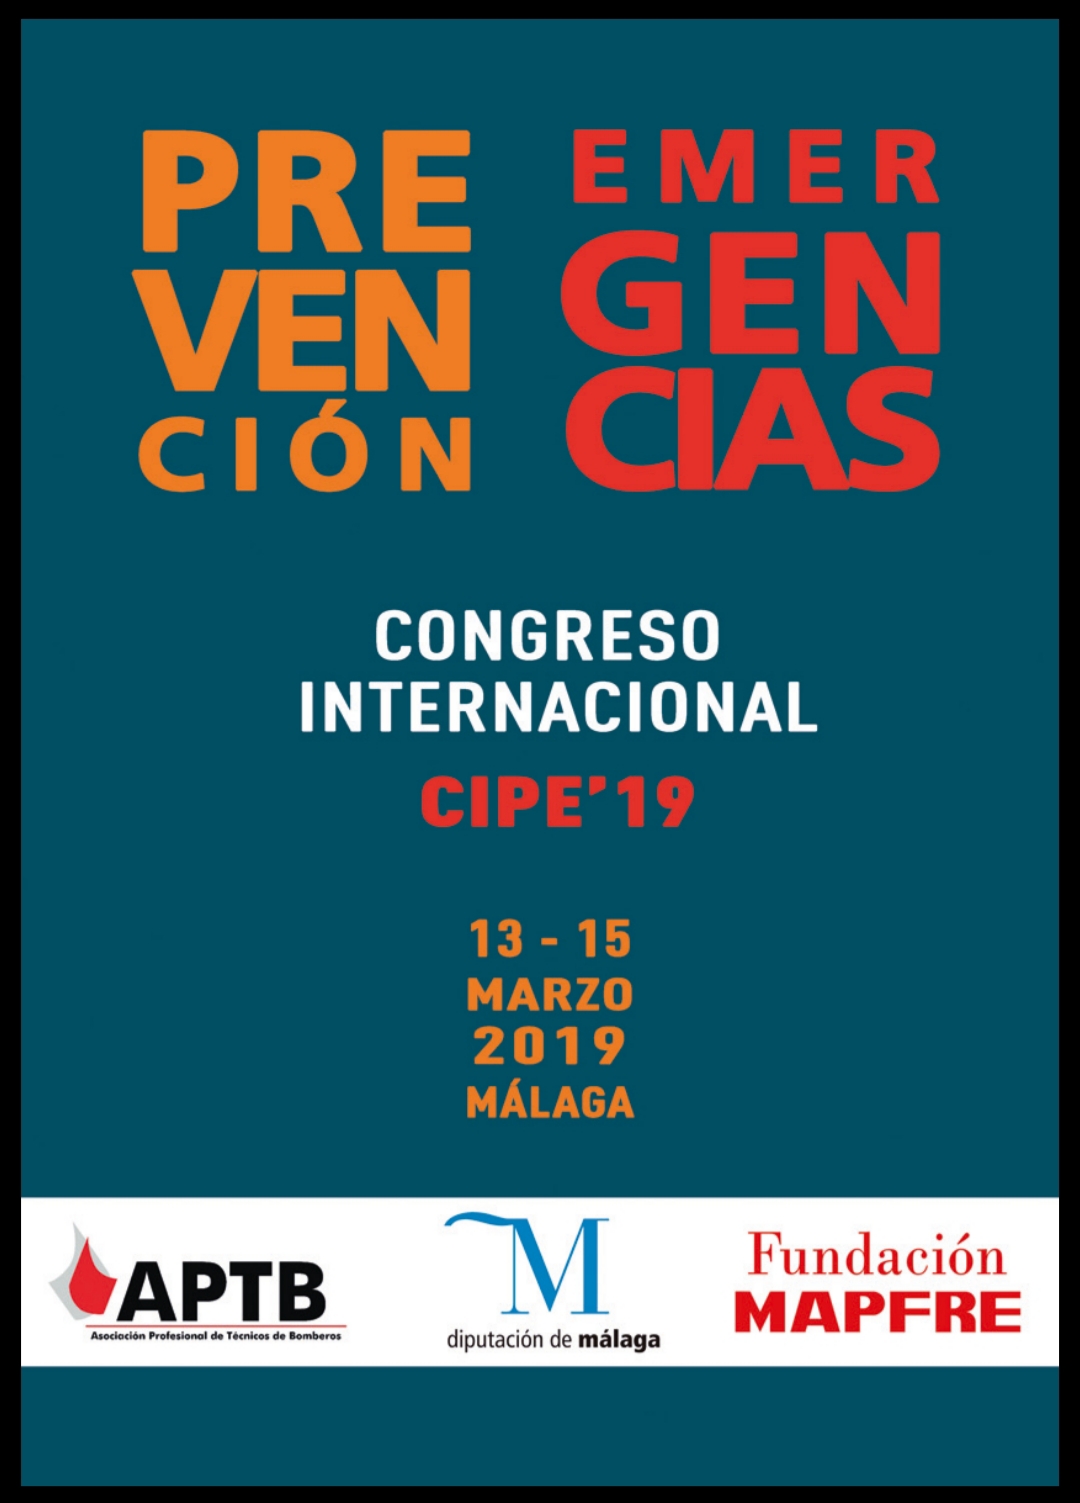 Málaga acogerá el #CIPE'19, los días 13, 14 y 15 de marzo